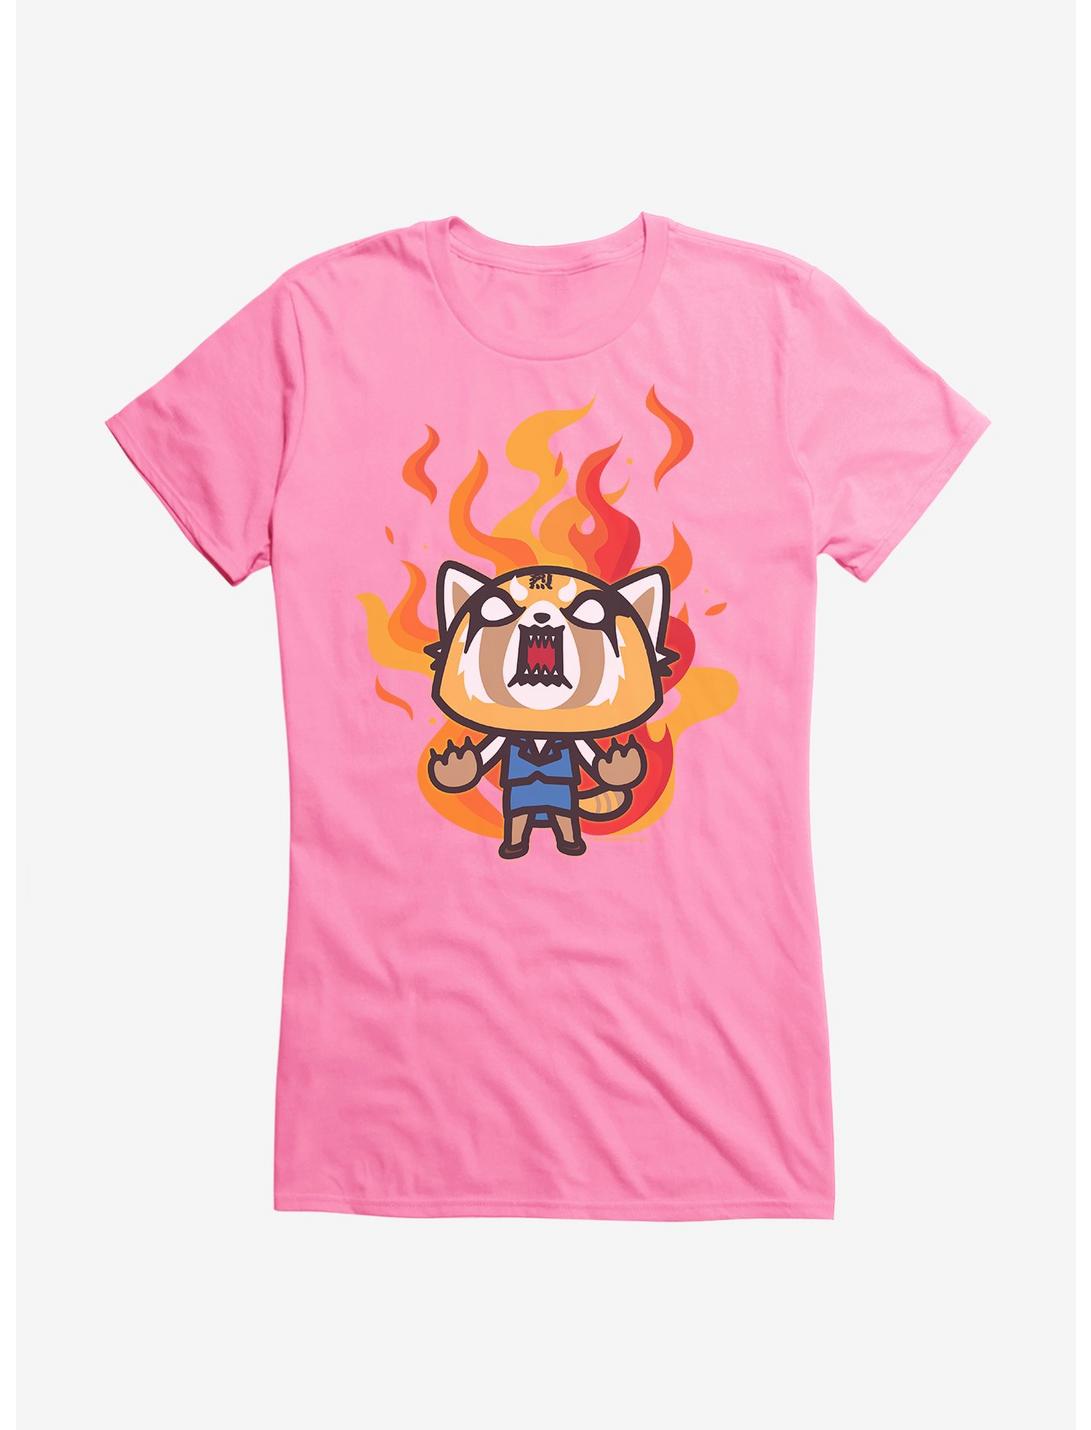 Aggretsuko Metal Rage Girls T-Shirt, , hi-res